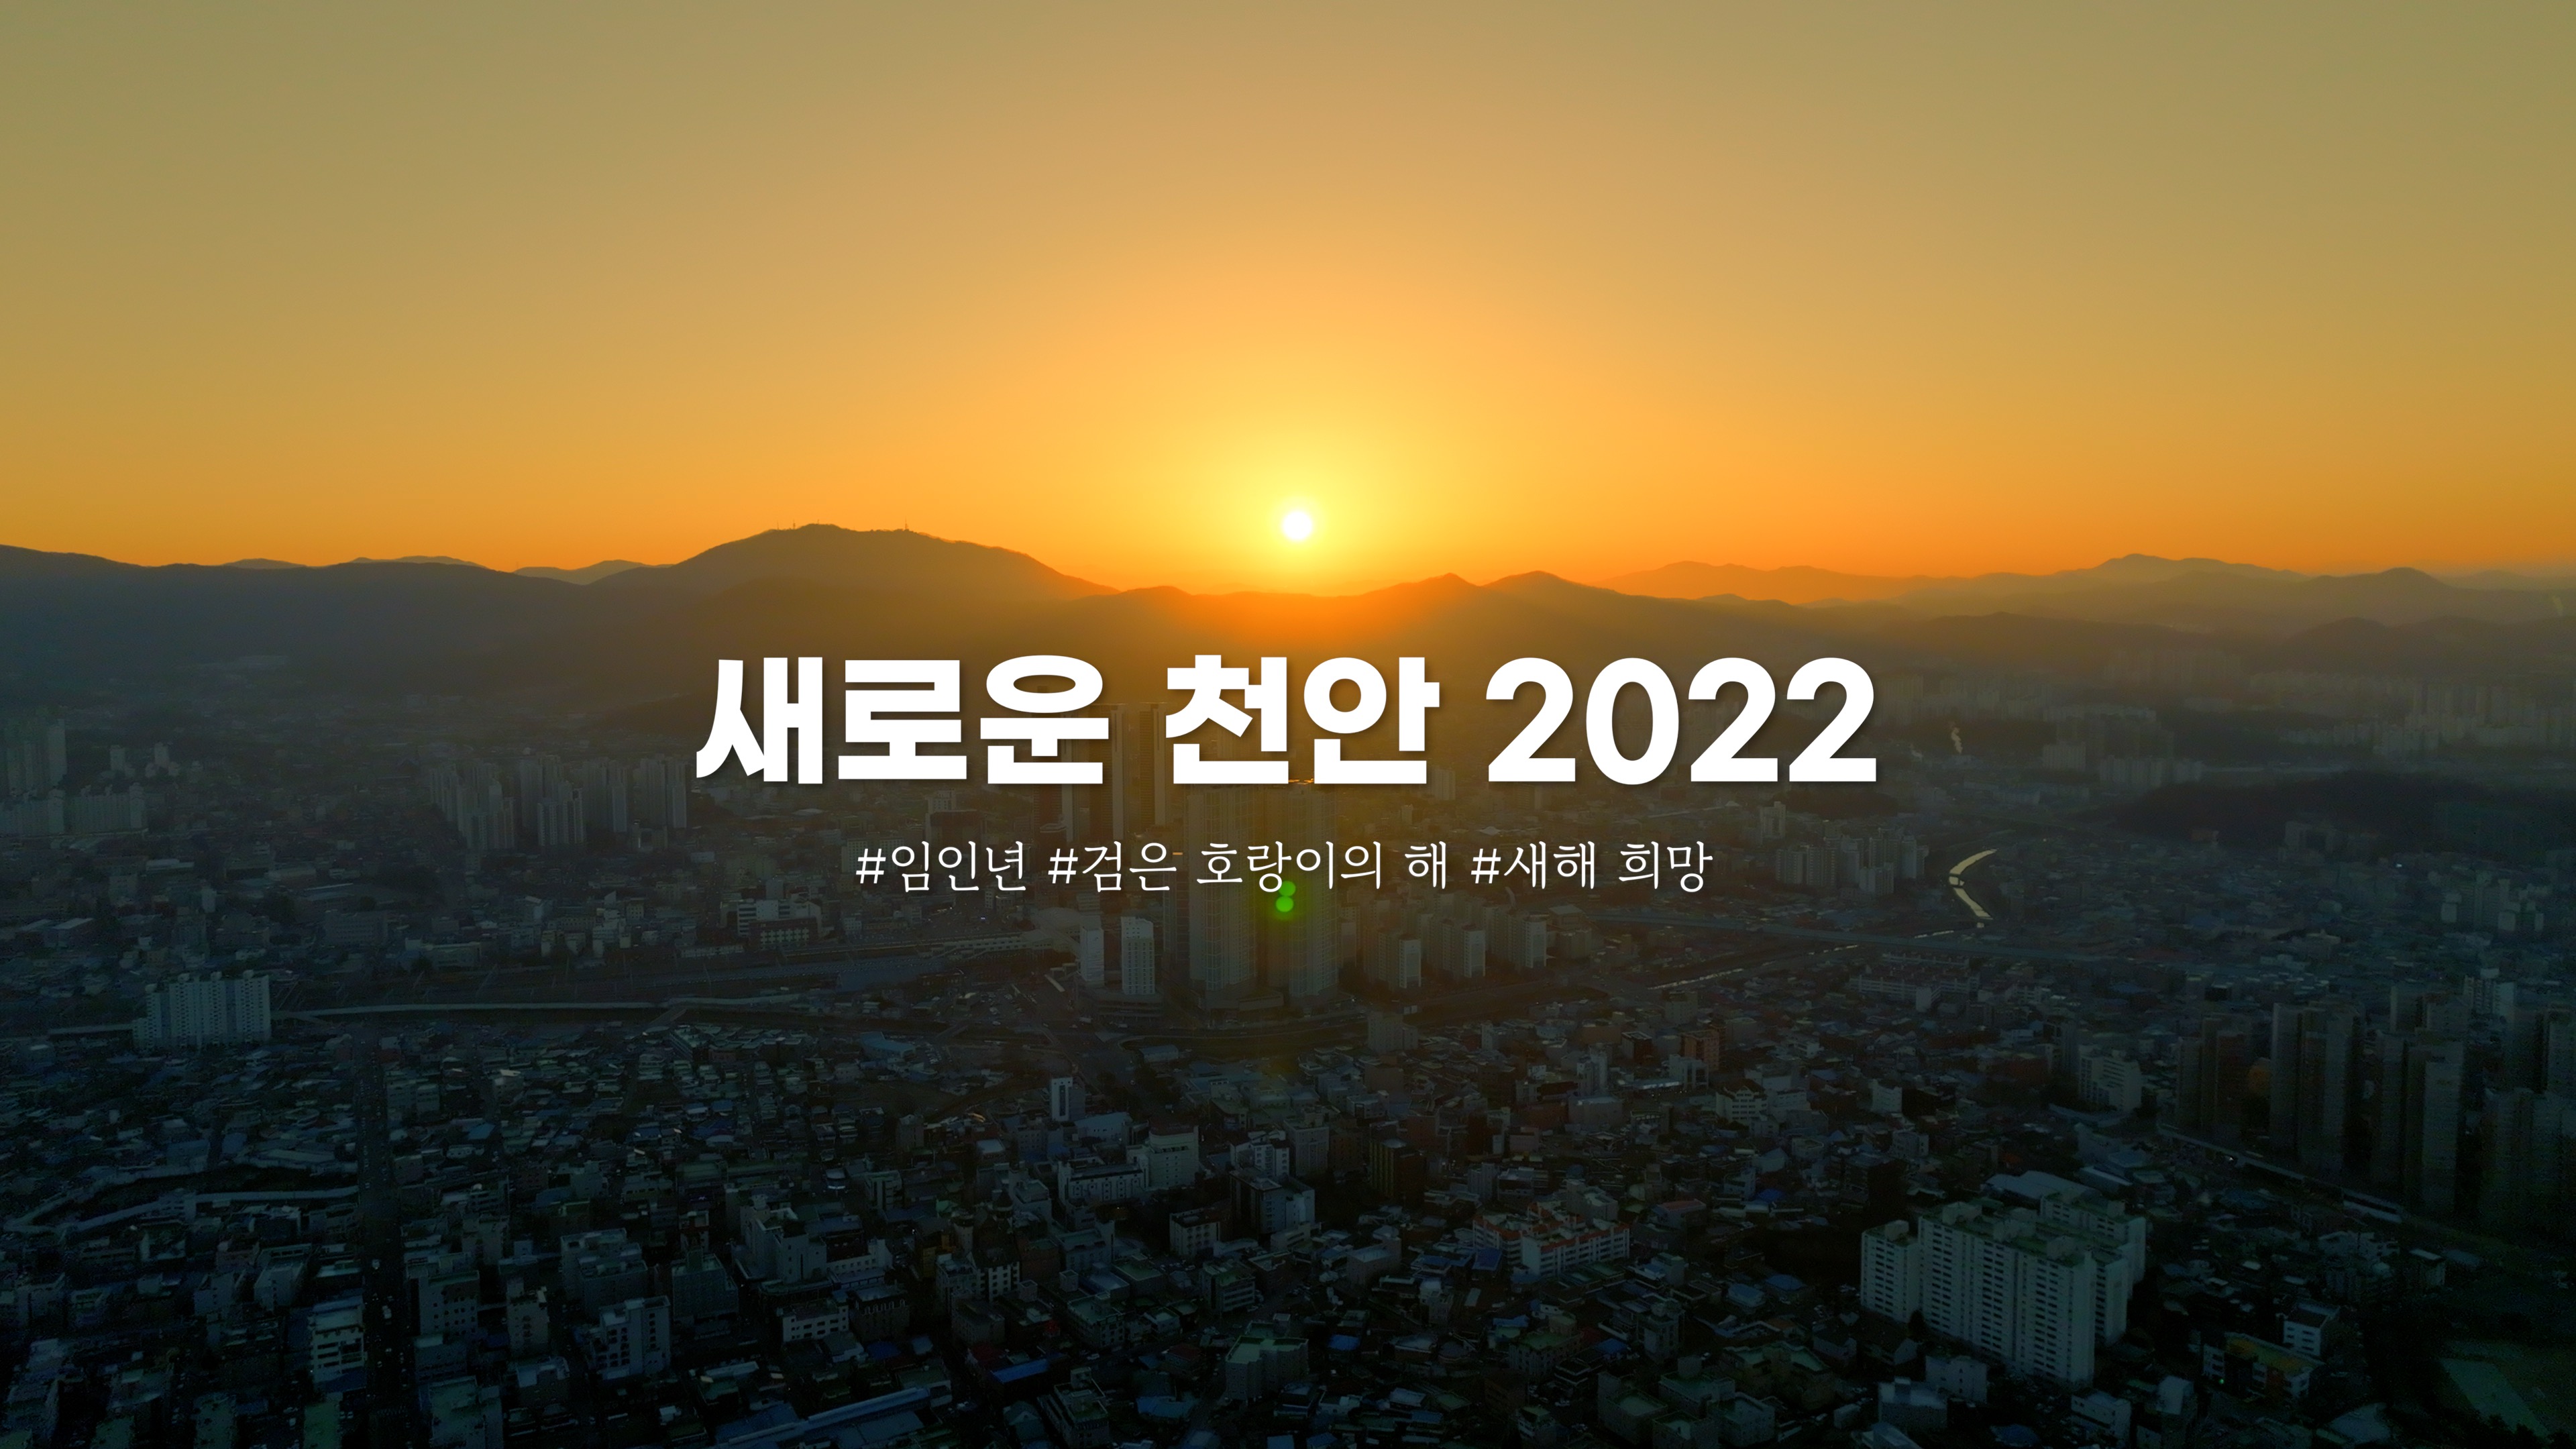 2022 New Cheonan, 우리는 계속 나아갑니다의 대표이미지